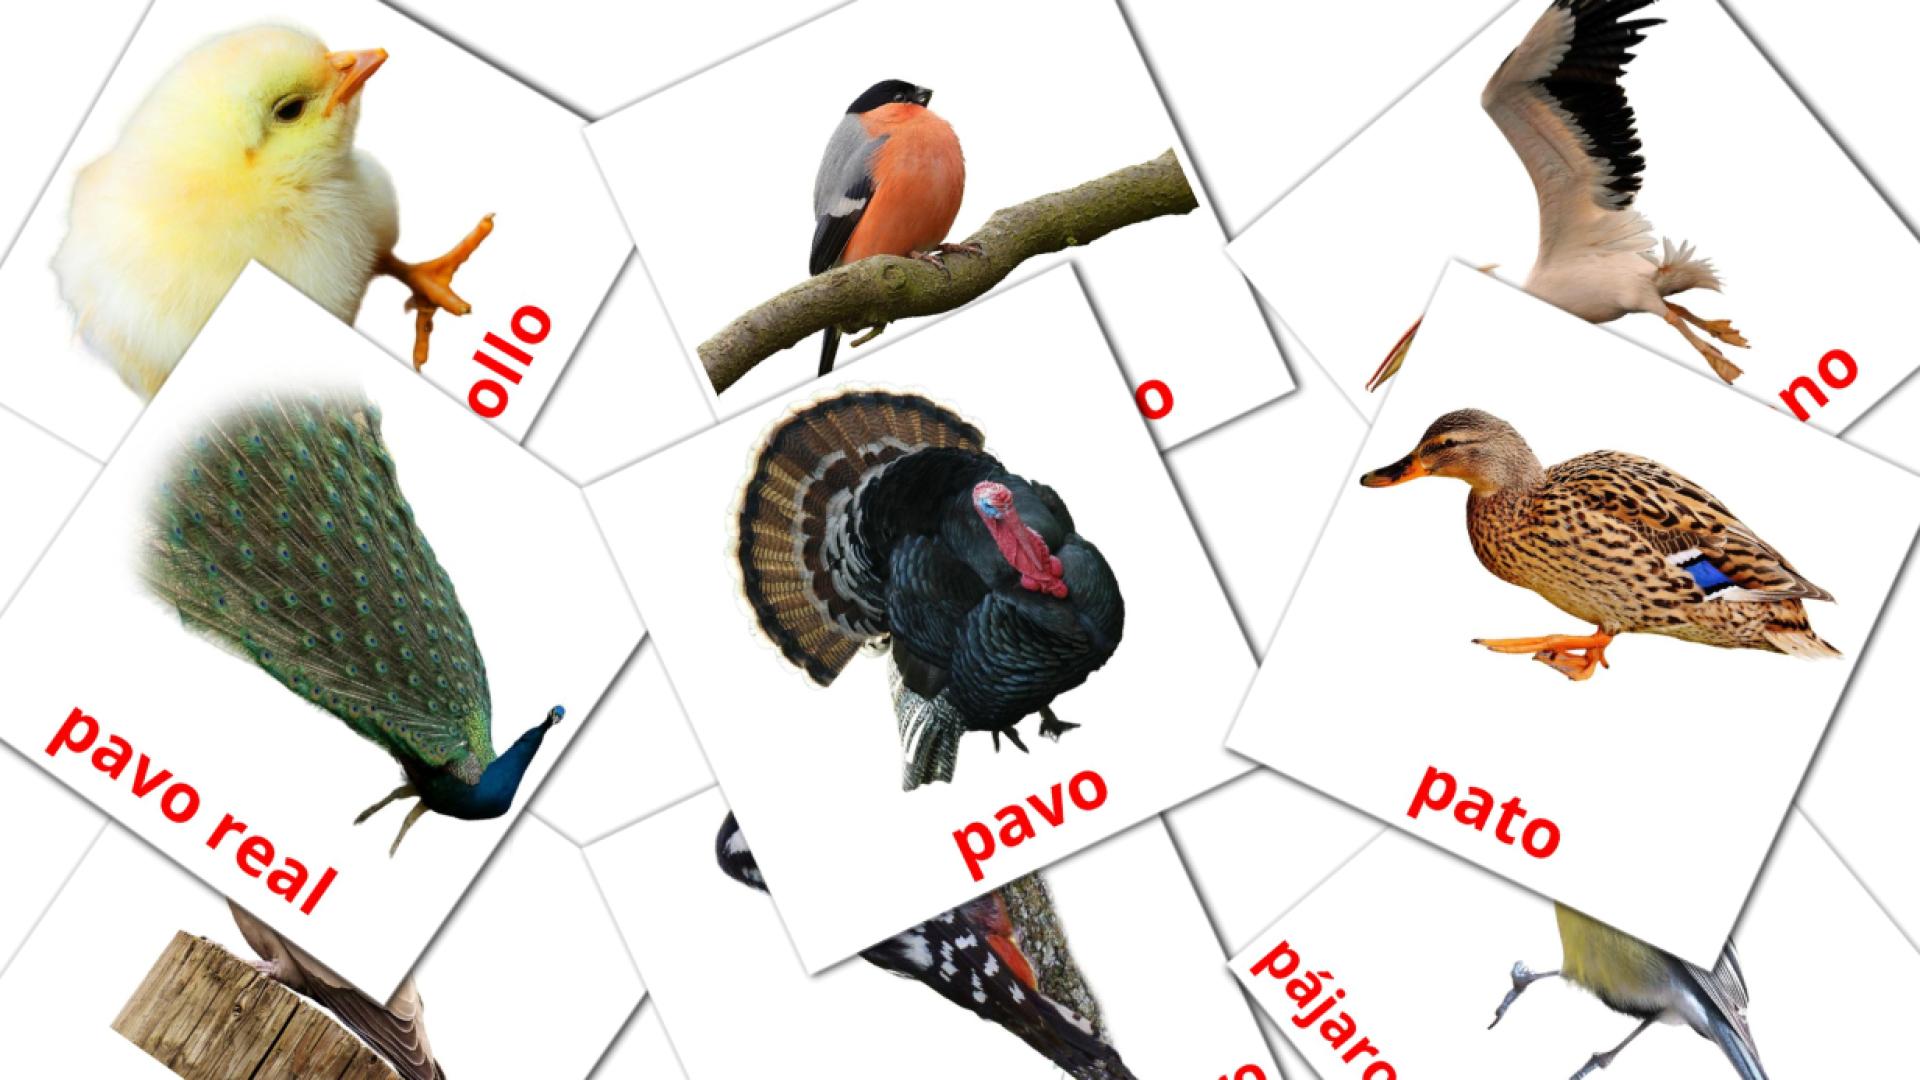 amhárico tarjetas de vocabulario en Aves